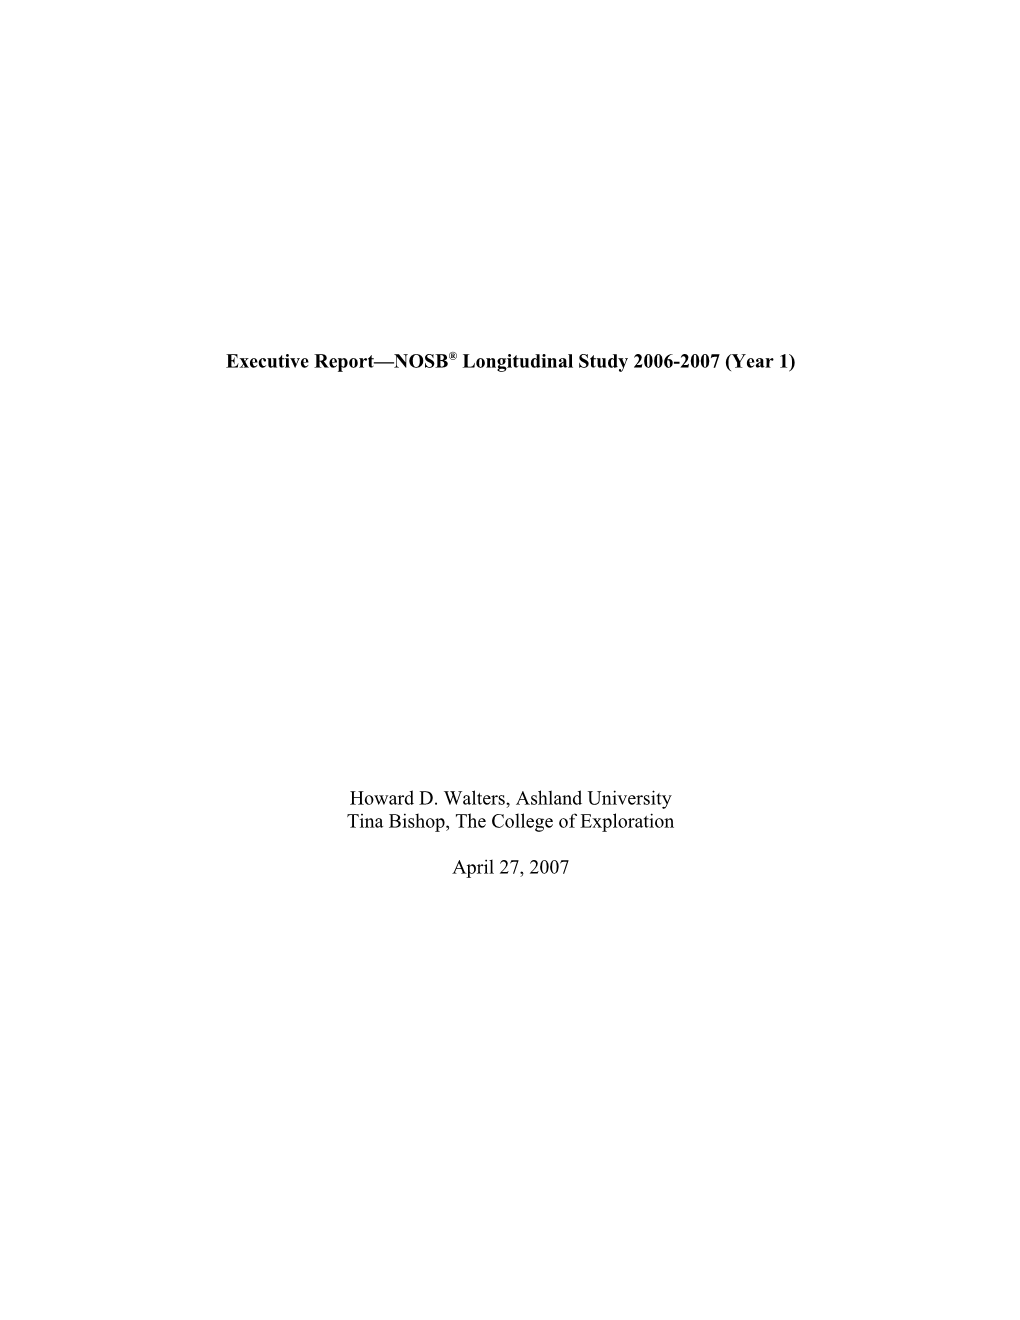 Executive Report NOSB Longitudinal Study 2006-2007 (Year 1)